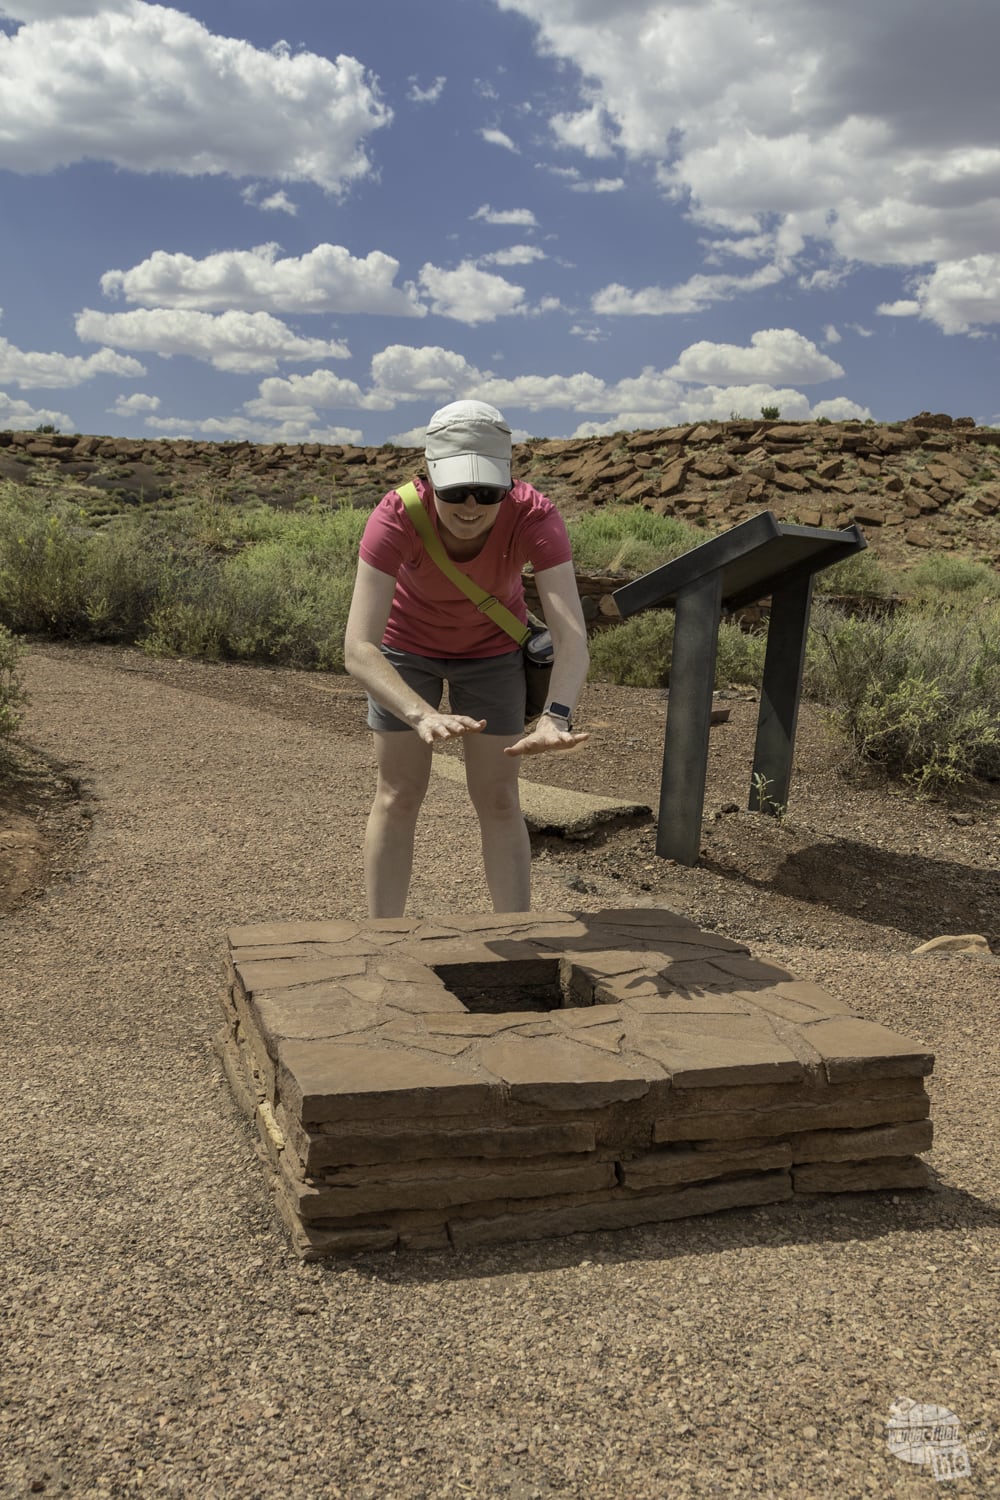 The blowhole near Wupatki Pueblo in Wupatki National Monument